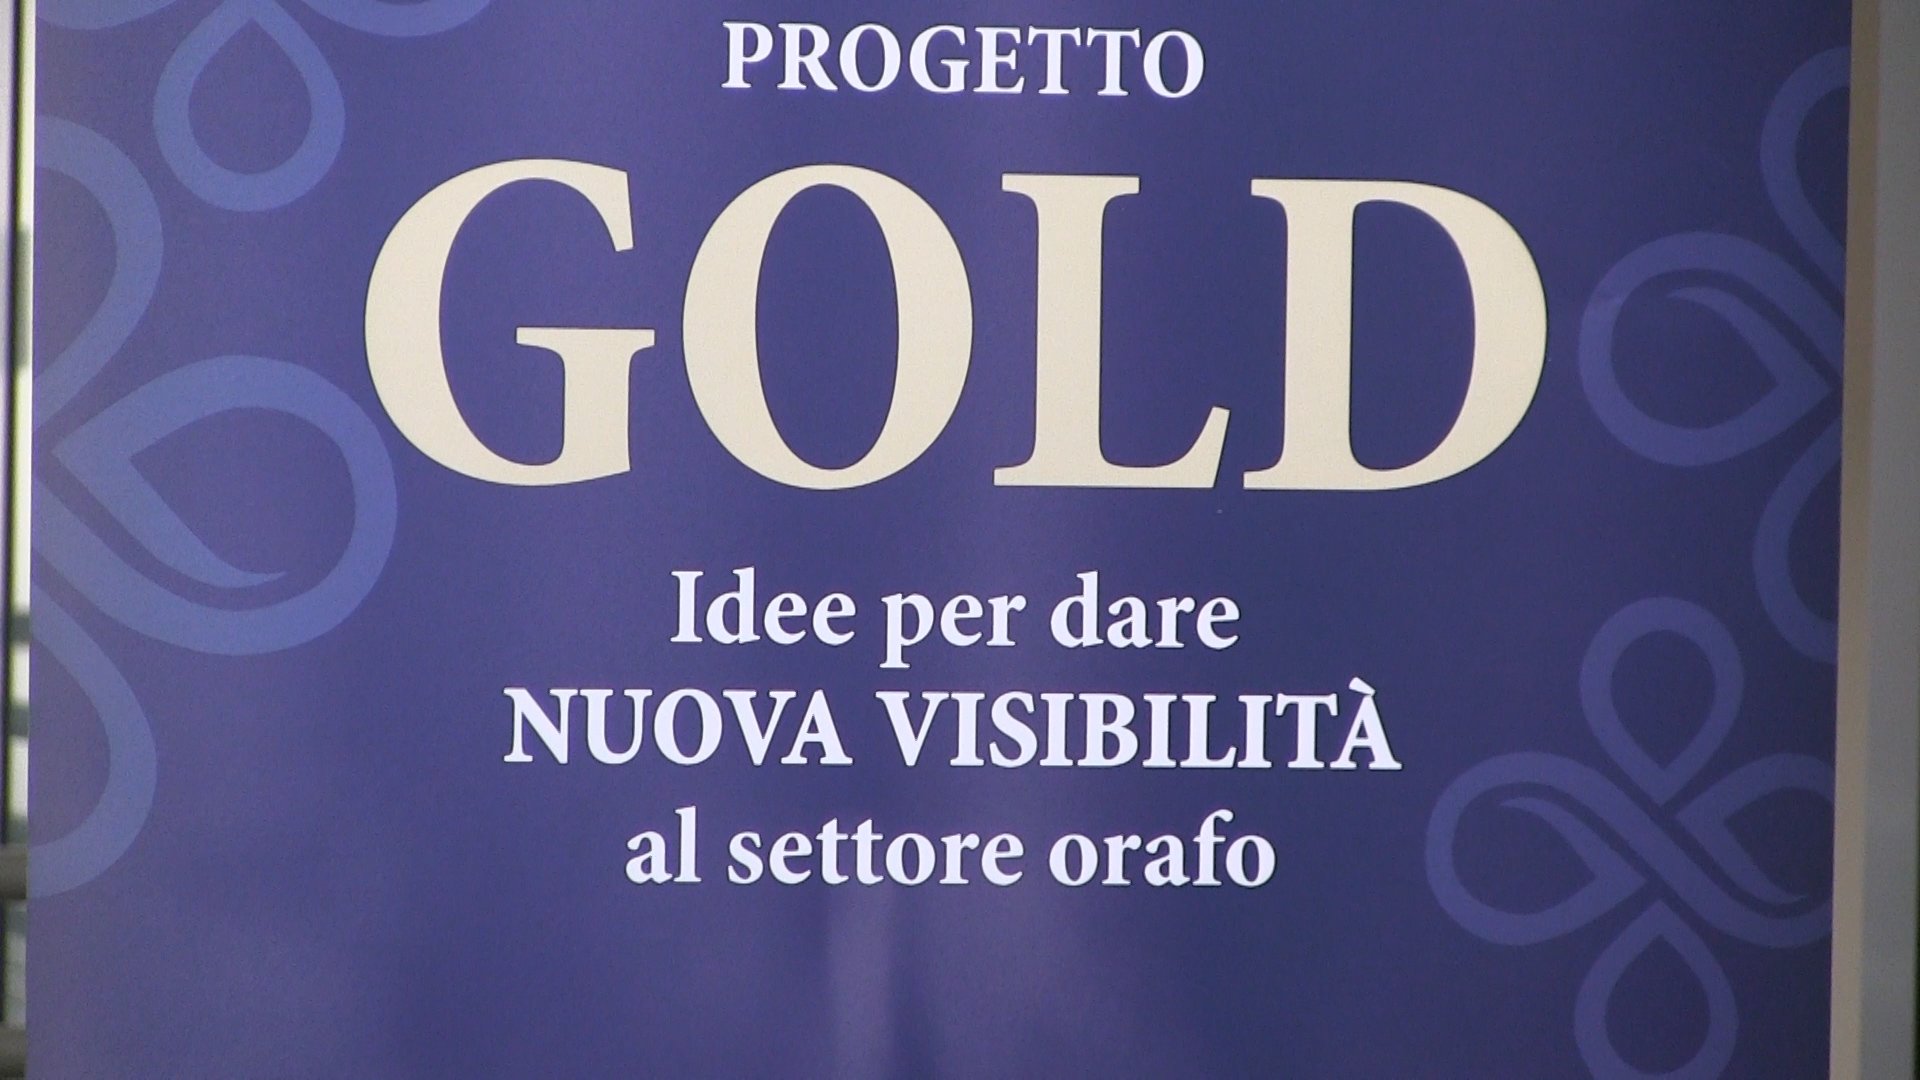 Il progetto Gold di Cna va avanti e cerca di valorizzare il Made in Italy